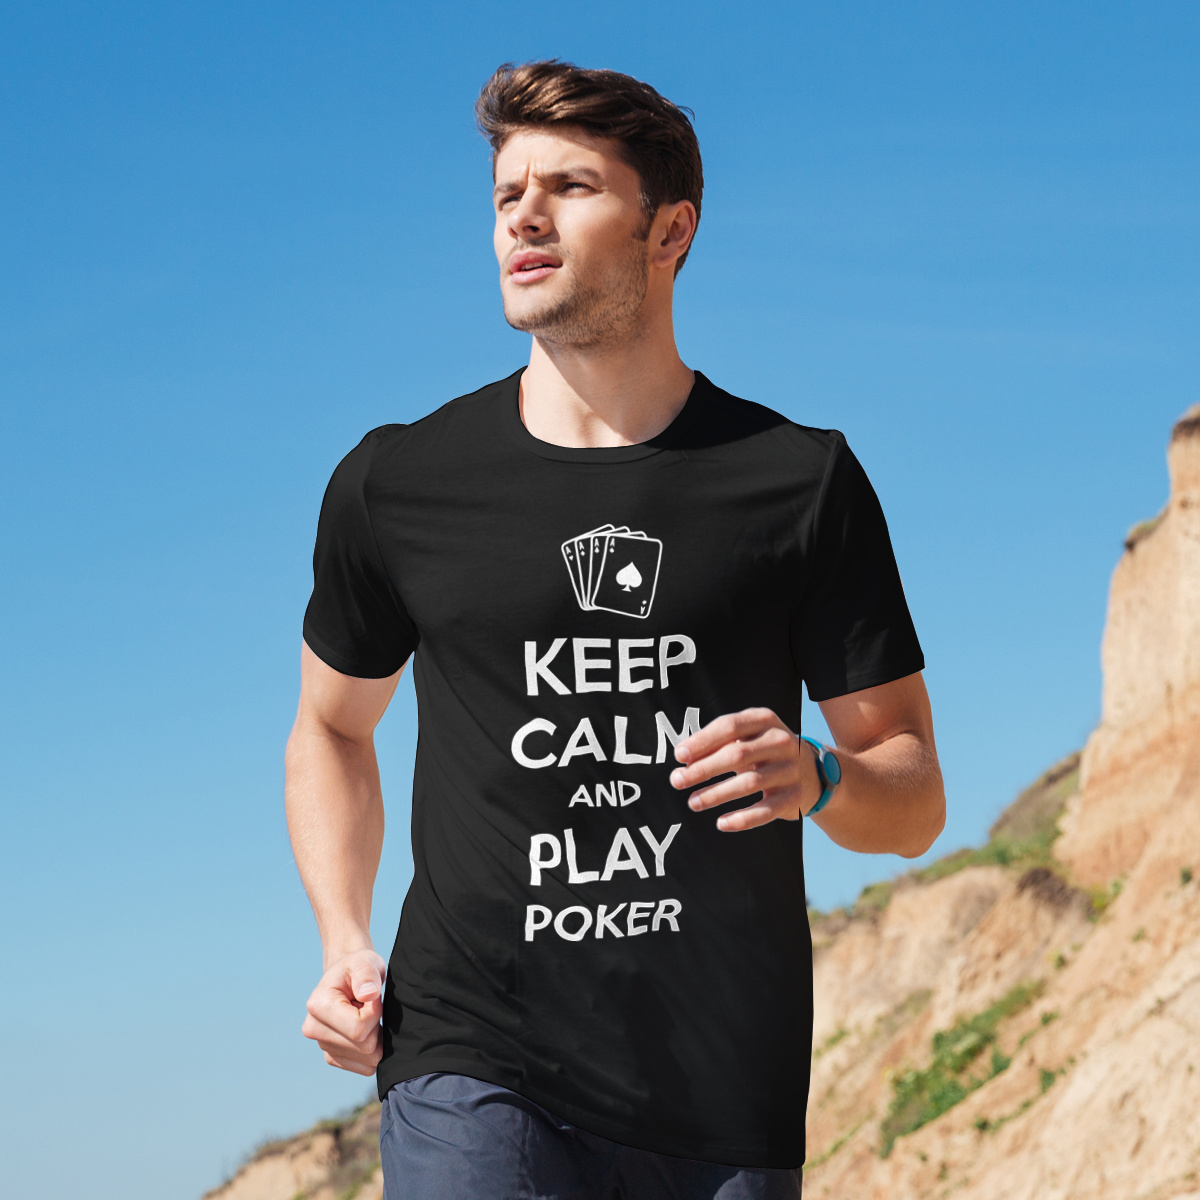 Keep Calm and Play Poker - Męska Koszulka Czarna